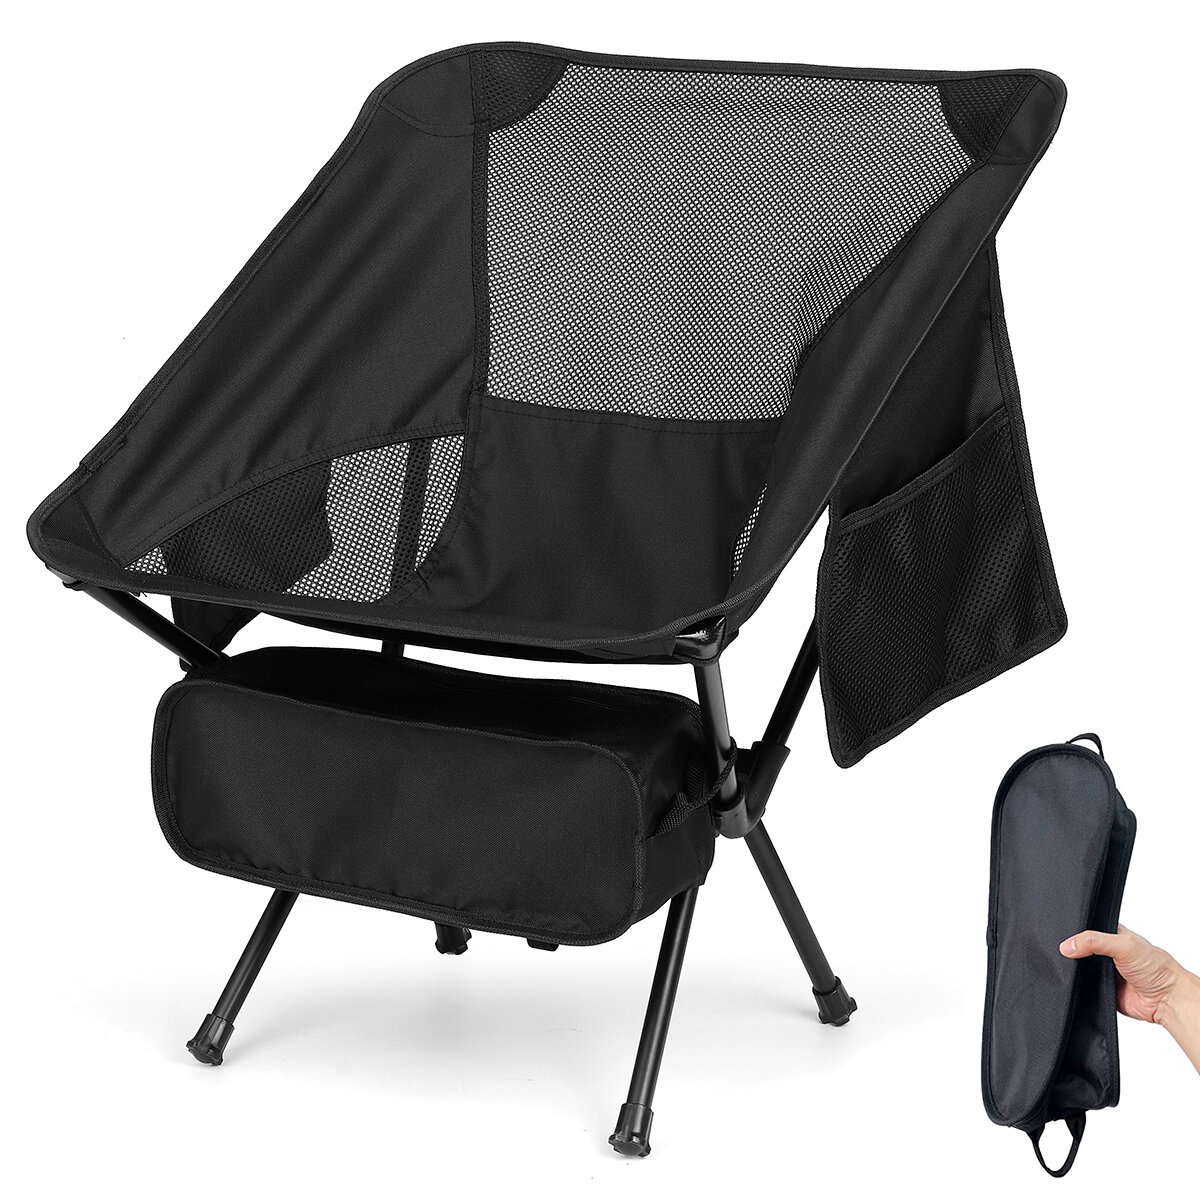 Chaise de camping en plein air chaise pliante portable plage randonnée pique-nique siège outils de pêche chaise avec 2 sacs de rangement